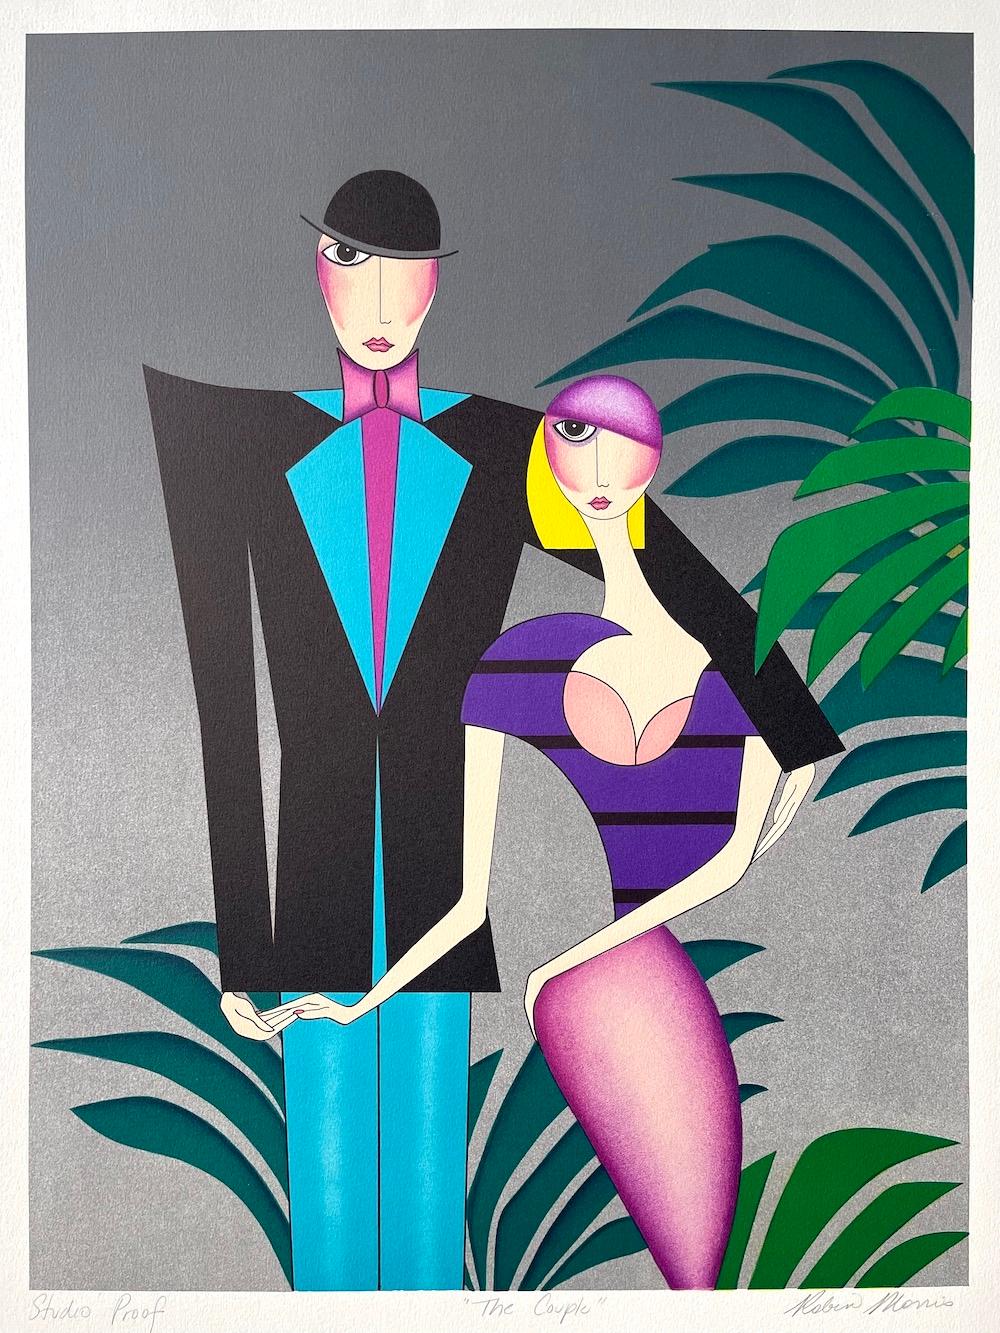 THE COUPLE Signed Lithograph, Art Deco Couple Portrait, 1920’s Flapper Fashion